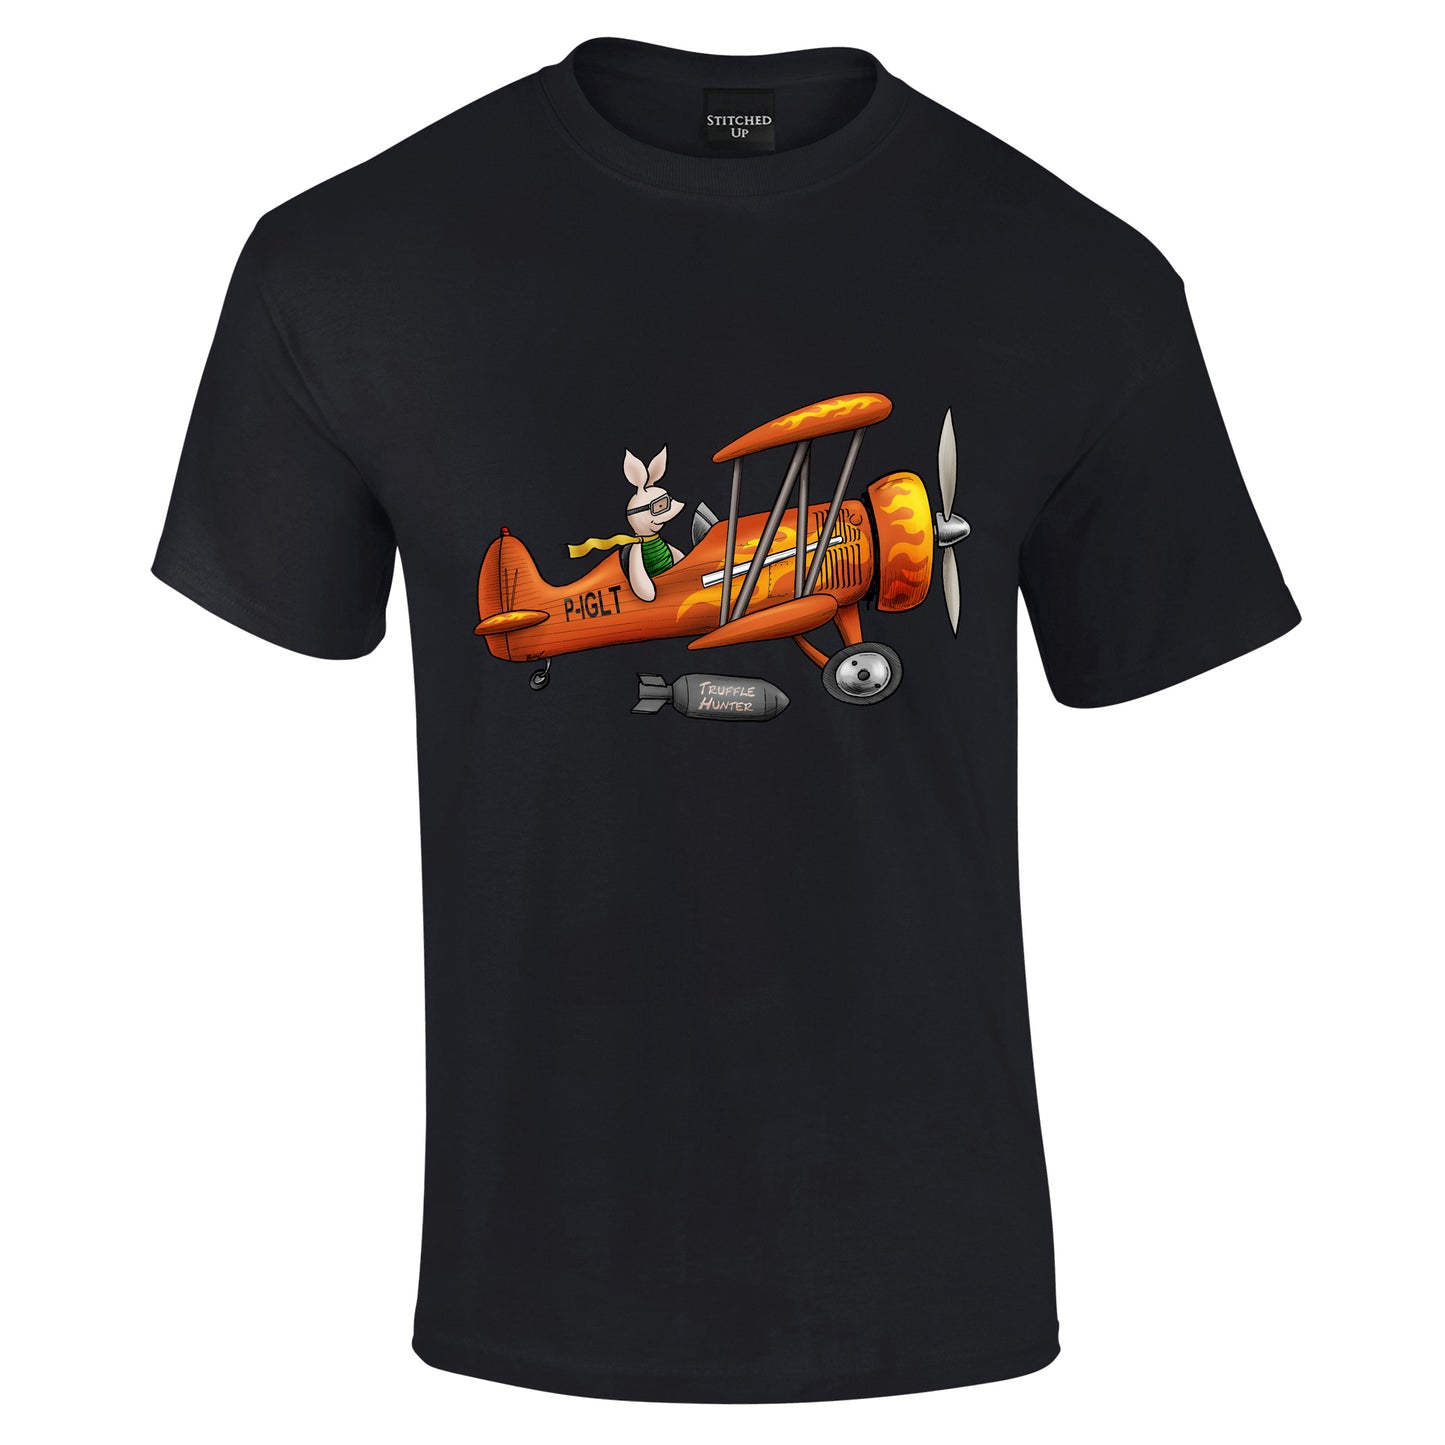 Piglet Aircraft T-Shirt